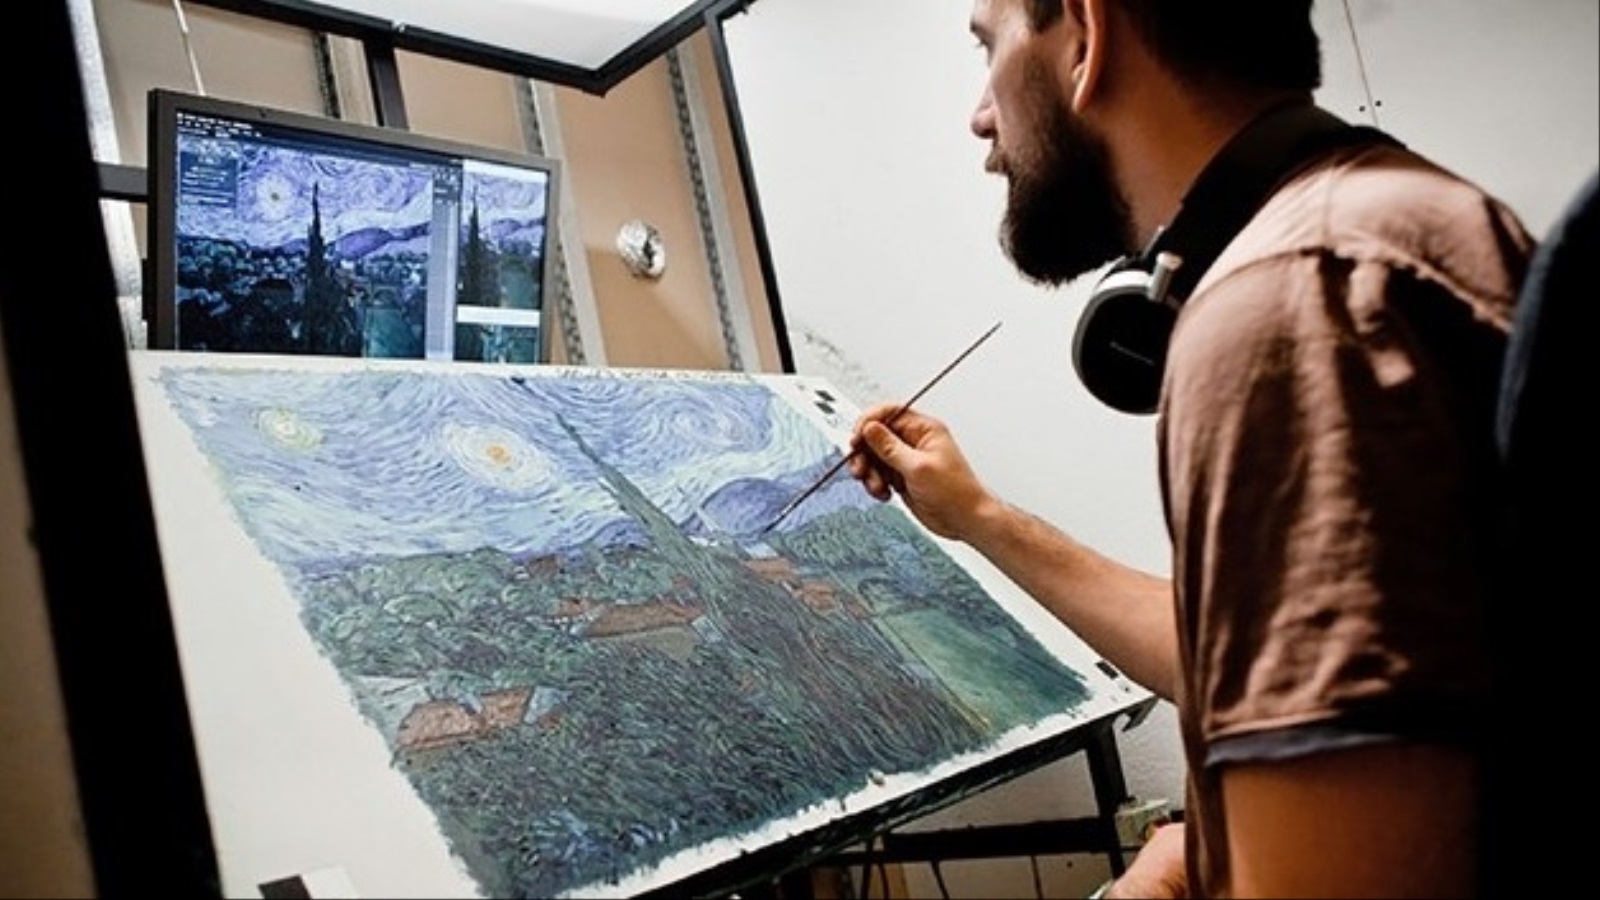 الرسام باتريك أرموسيويز يعمل على إحدى لوحات الفيلم